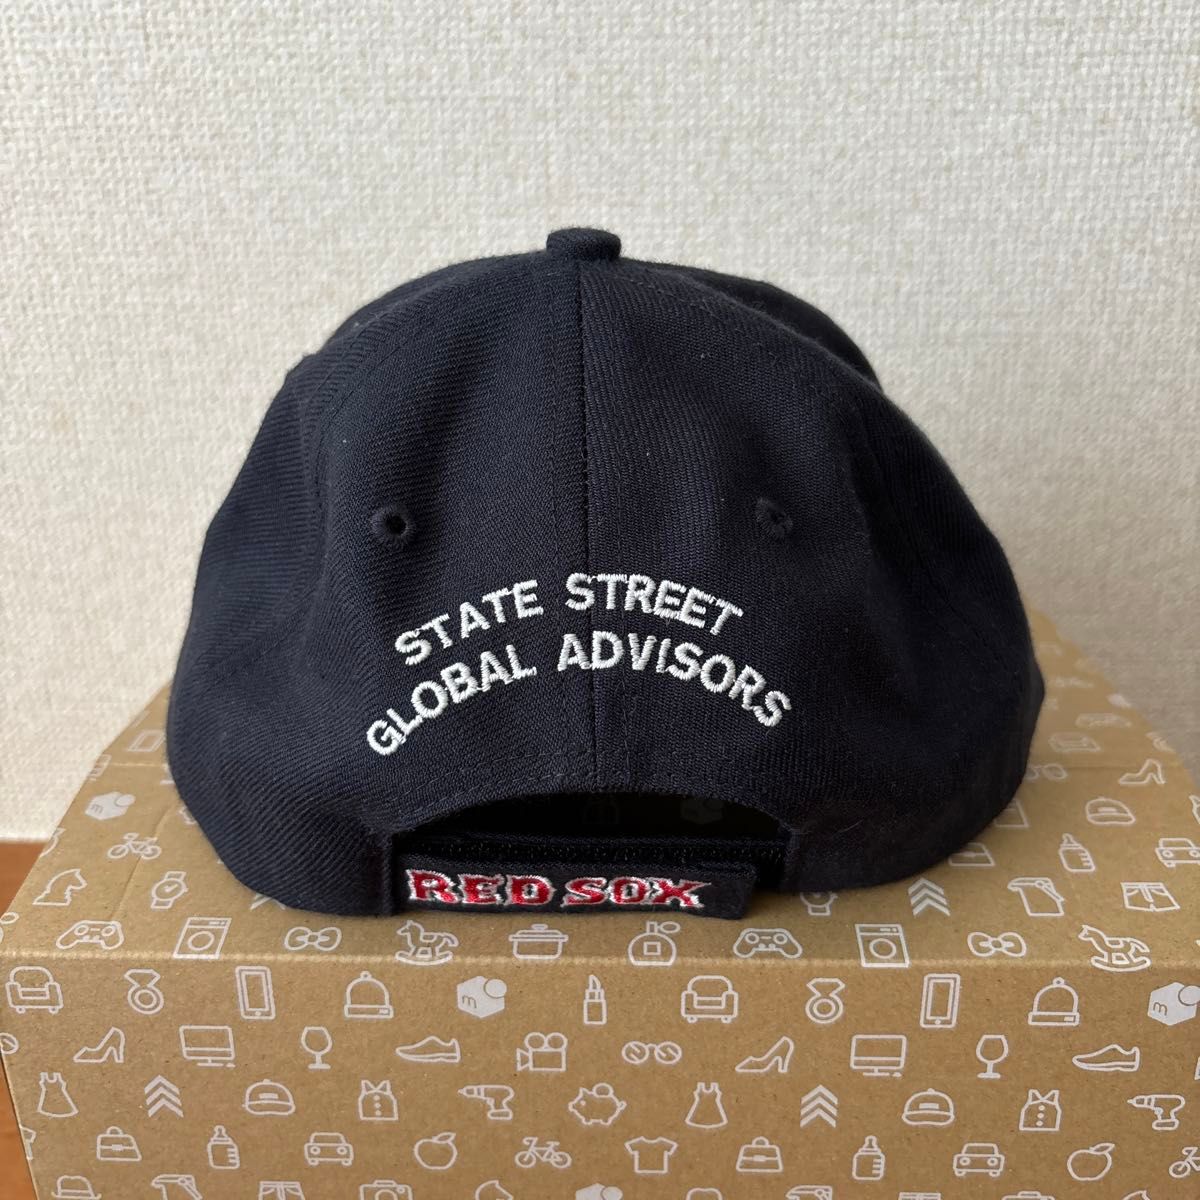 ボストン レッドソックス ツインズ社製 ステート ストリート 非売品 レア キャップ  帽子